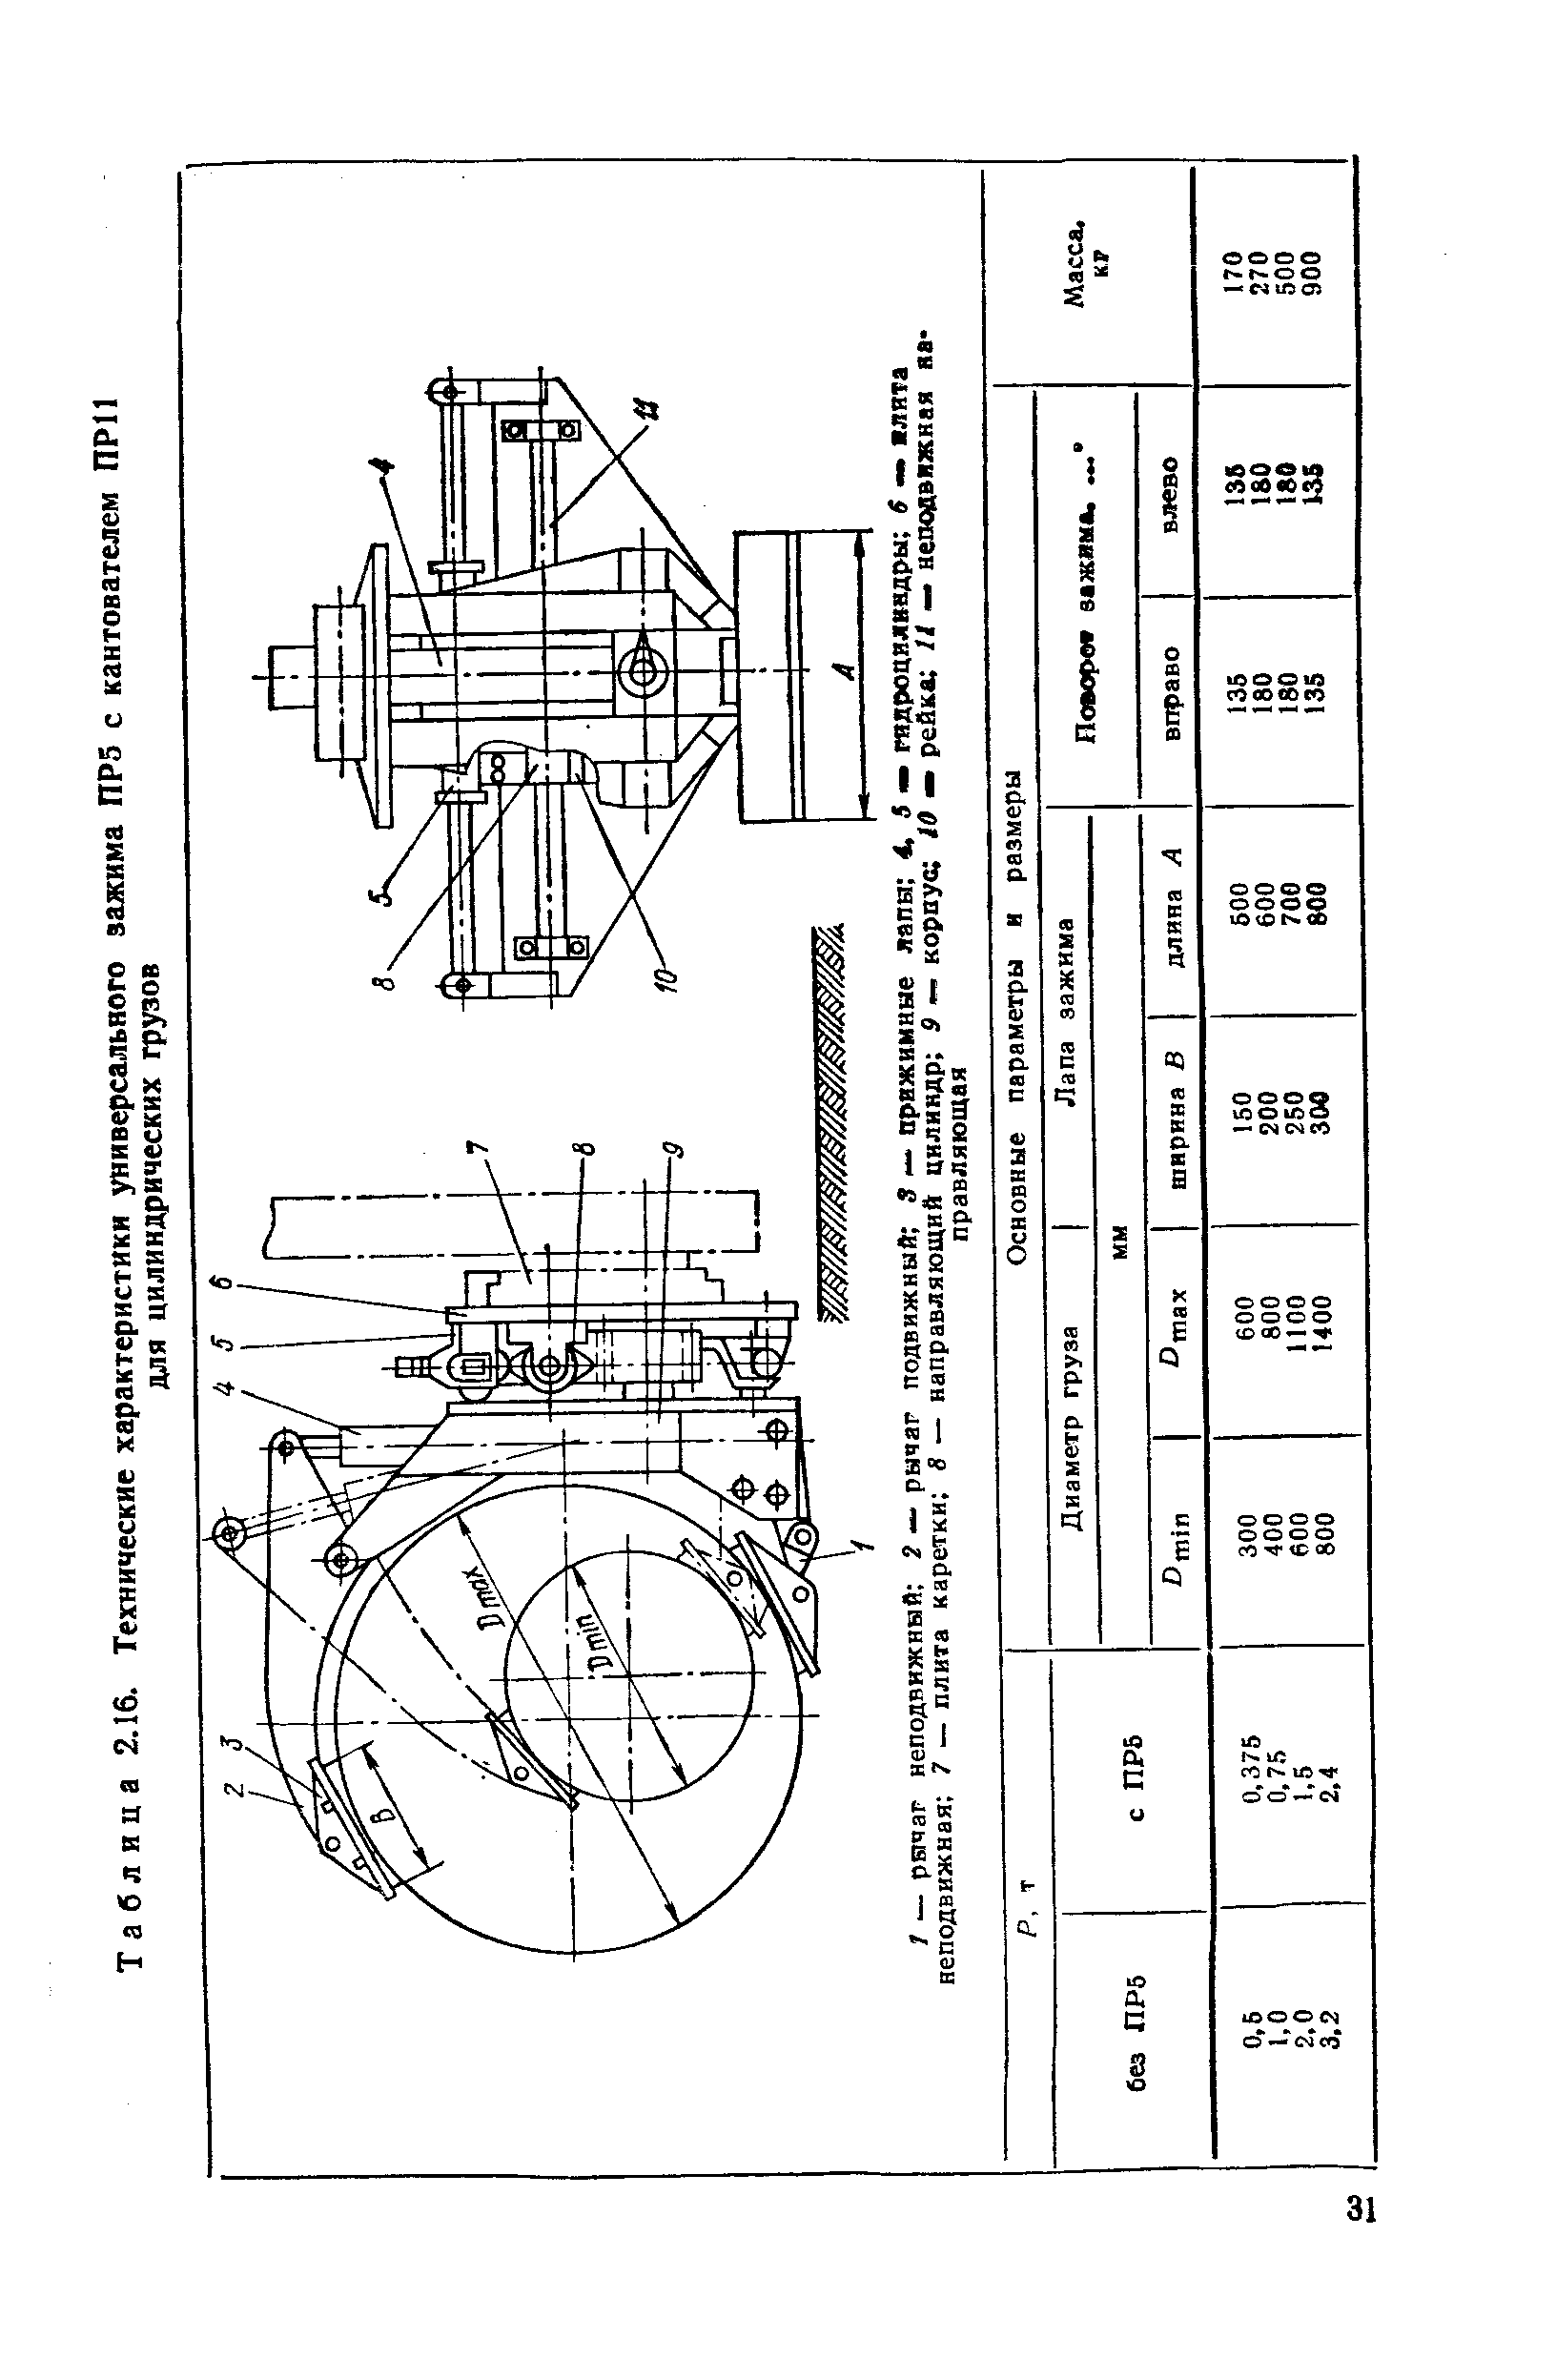 Таблица 2.16. Технические характеристики универсального зажима ПР5 с кантователем ПРП
